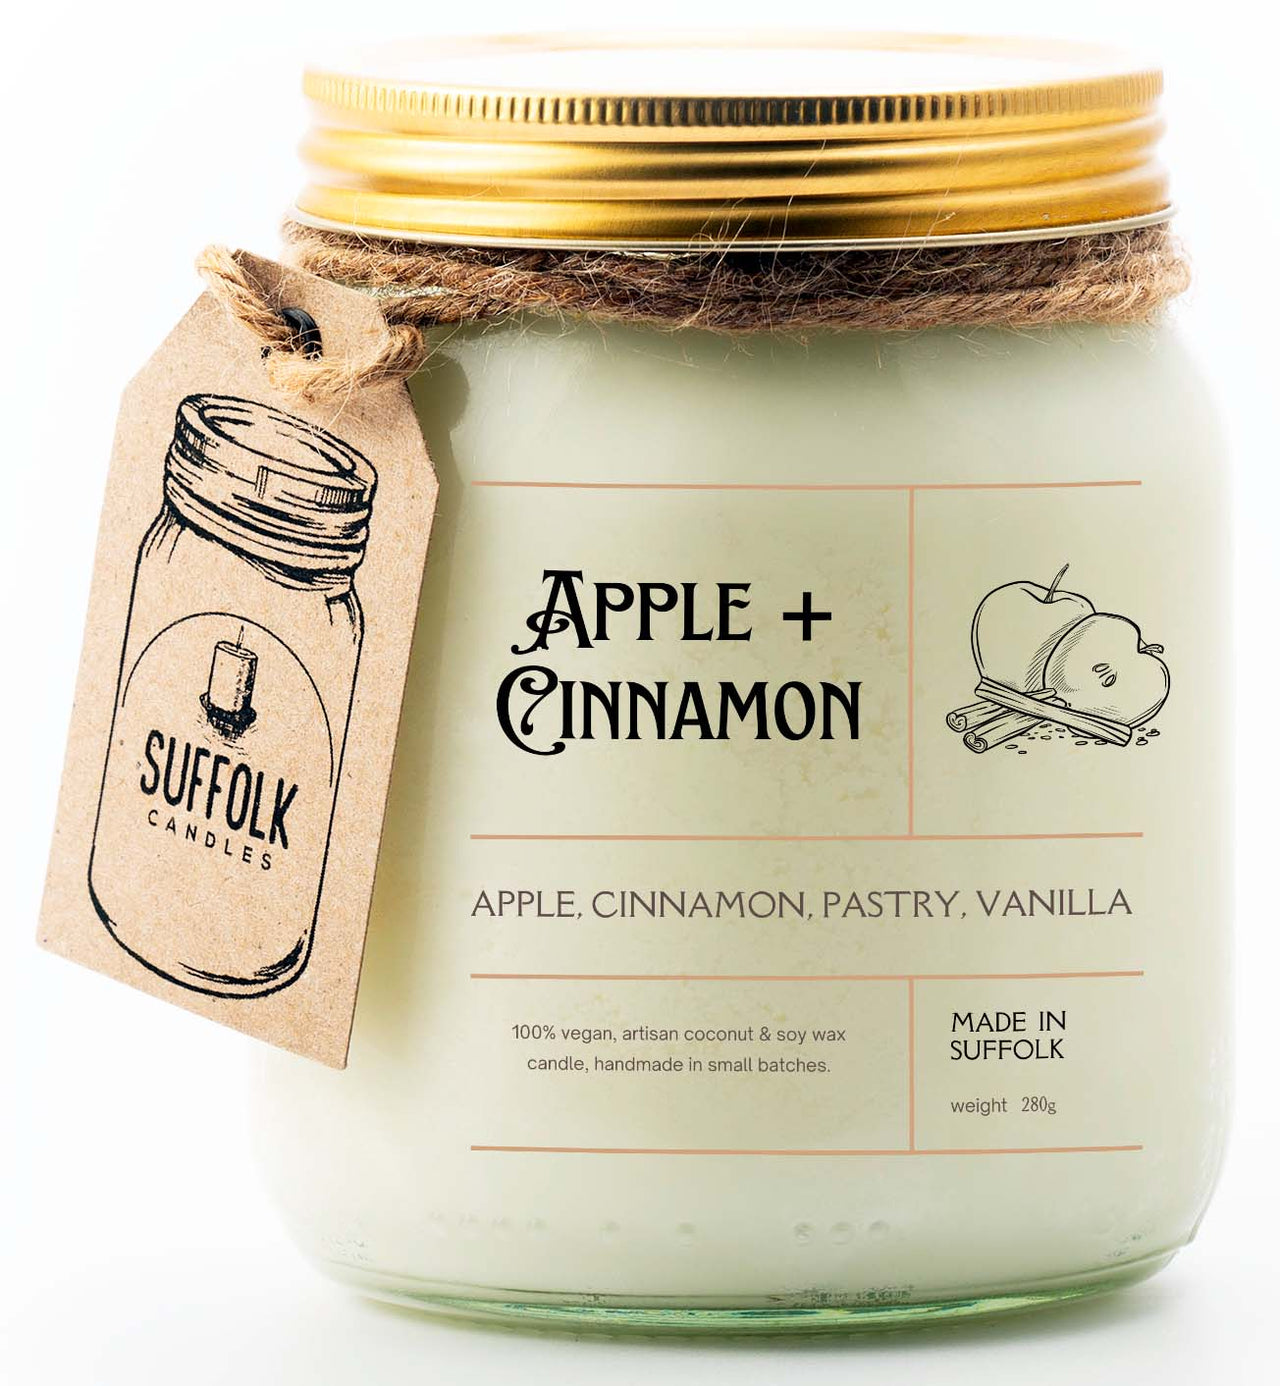 Apple & Cinnamon Candle, Warm Aroma of Freshly Baked Apple Crumble